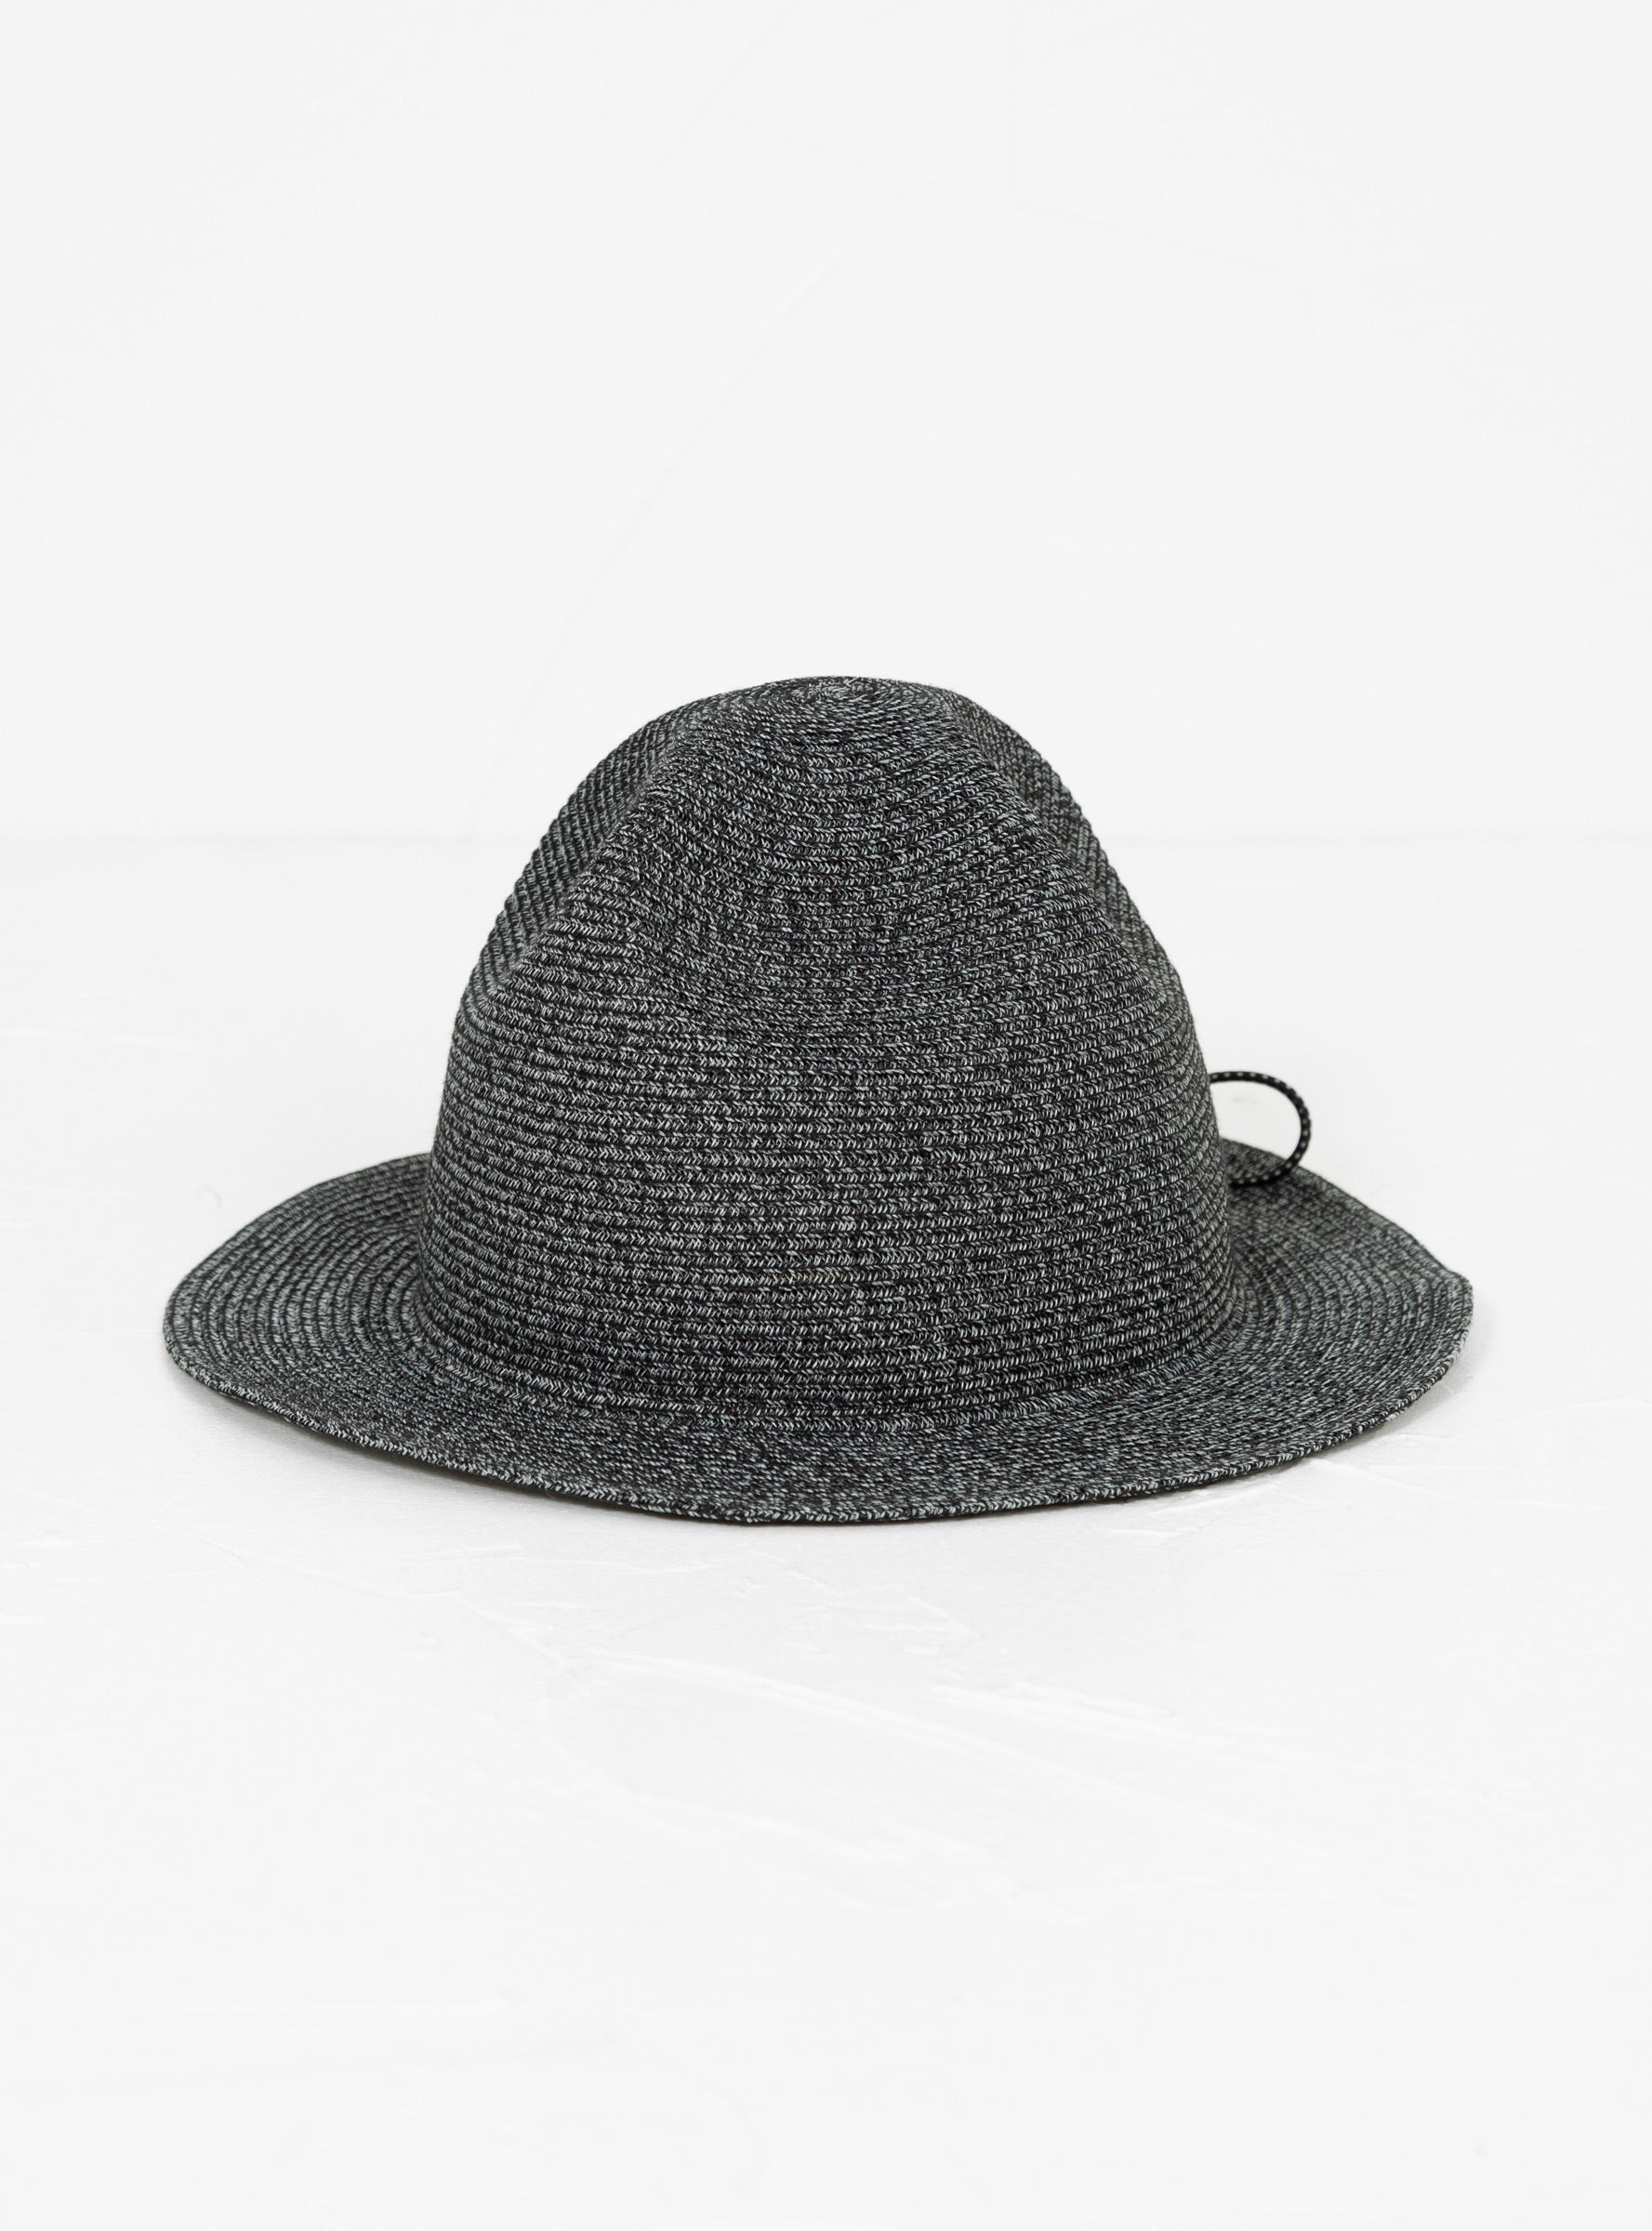 Sublime Packable Travel Mountain Hat Black